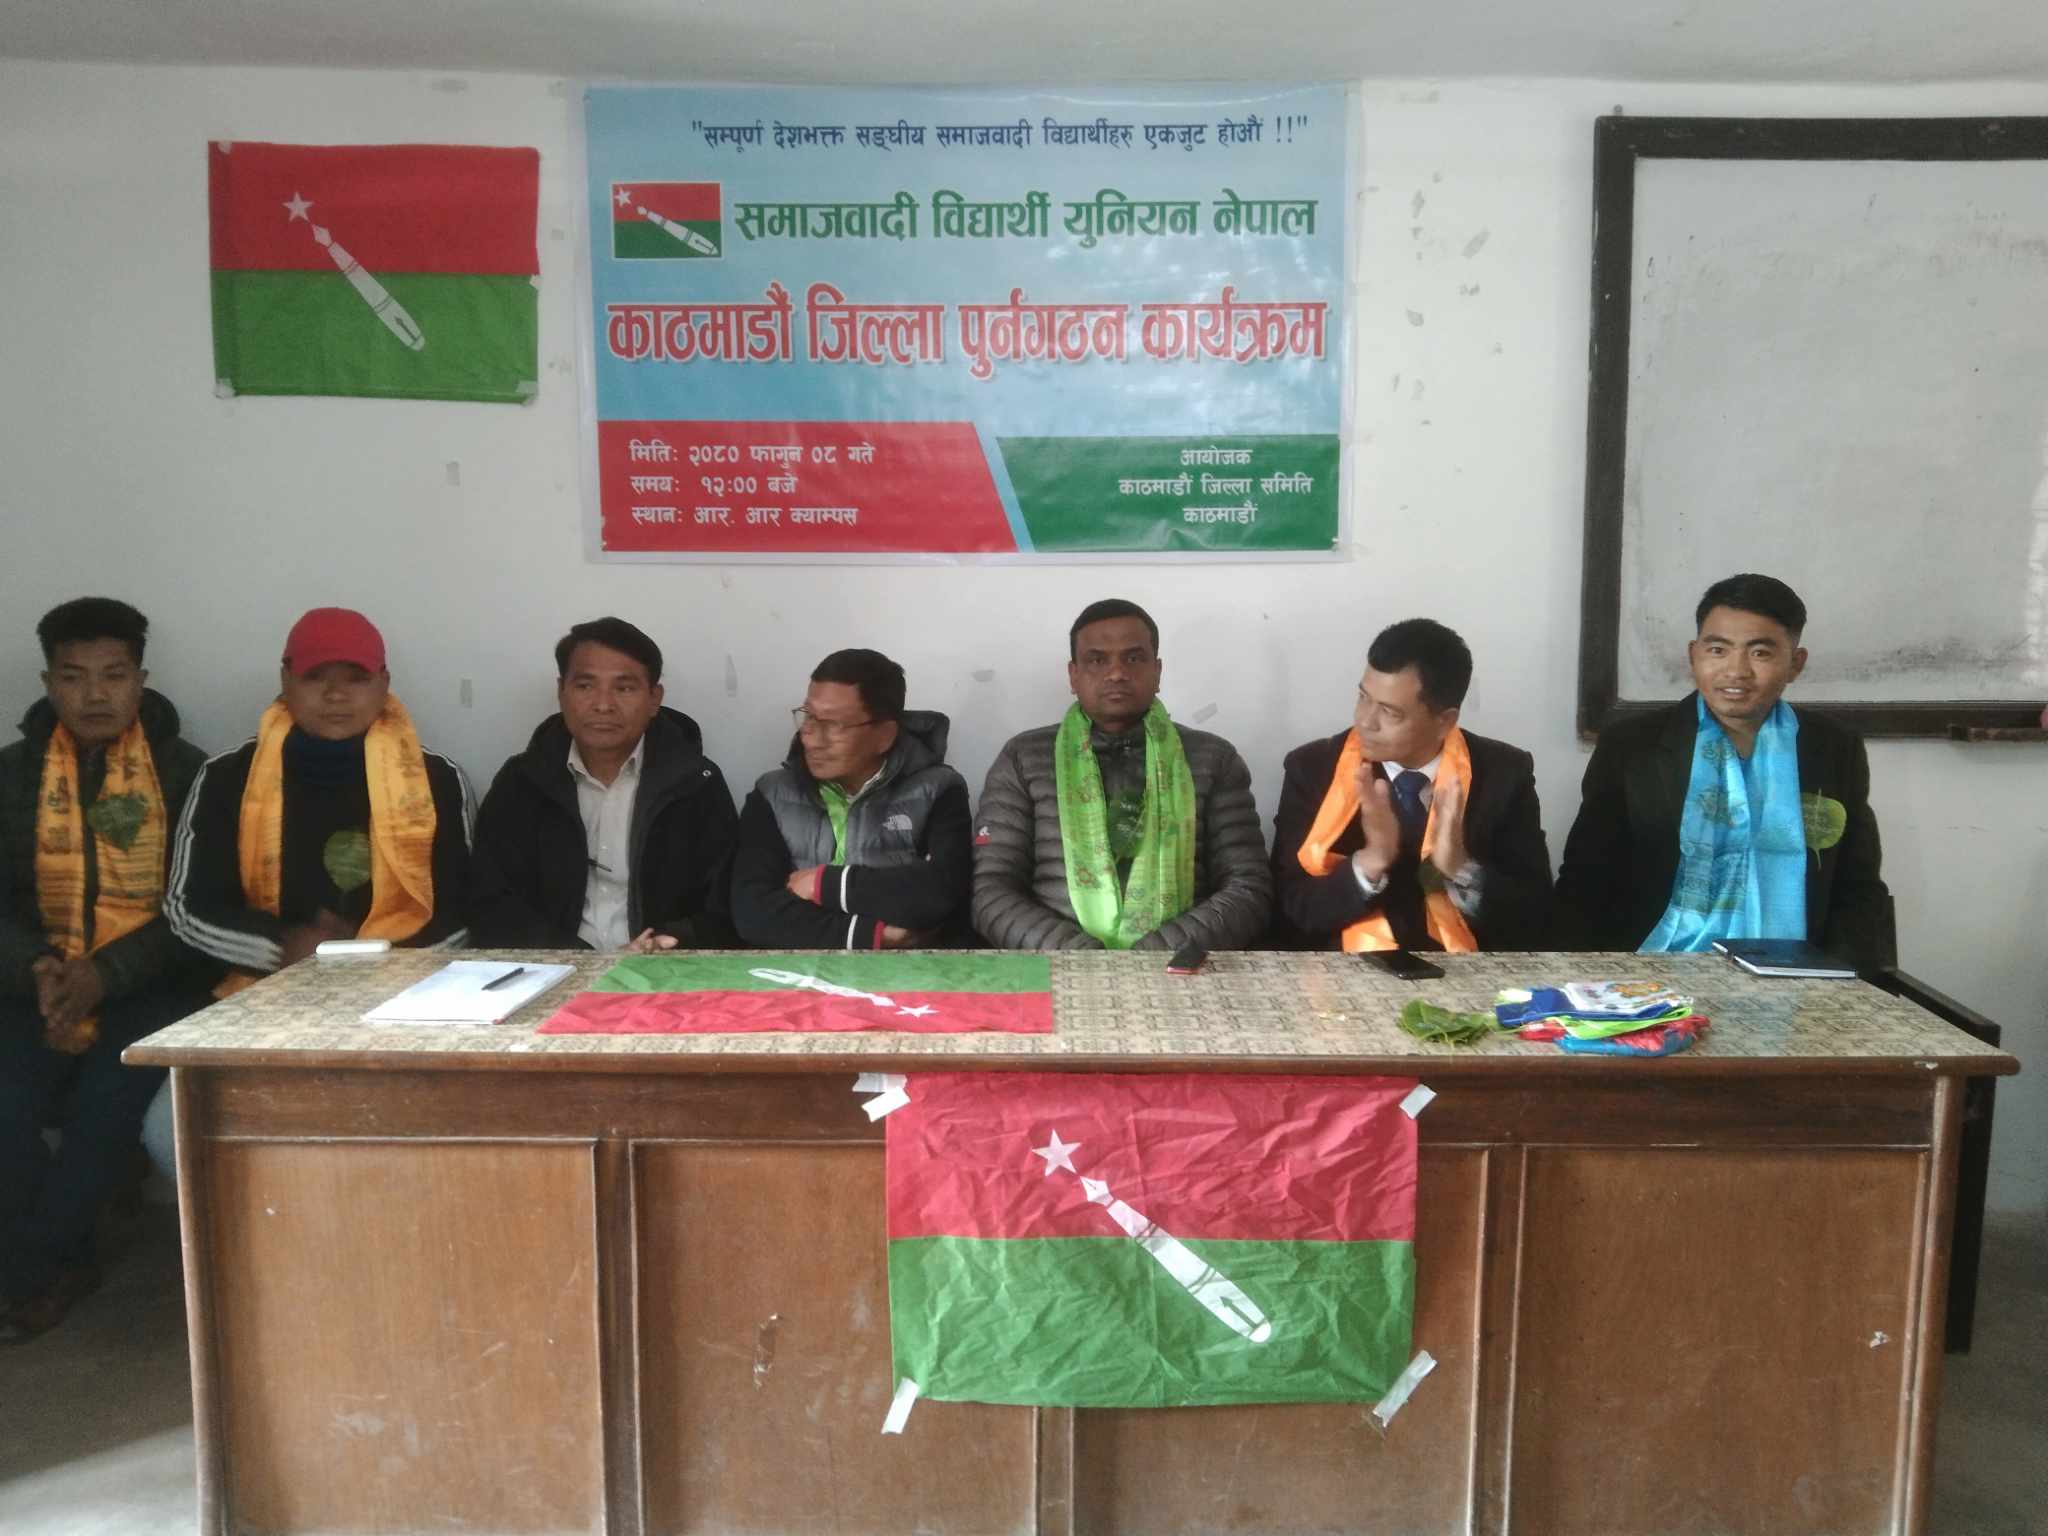 समाजवादी विद्यार्थी युनियनको काठमाण्डौ जिल्ला समिति पुनर्गठन